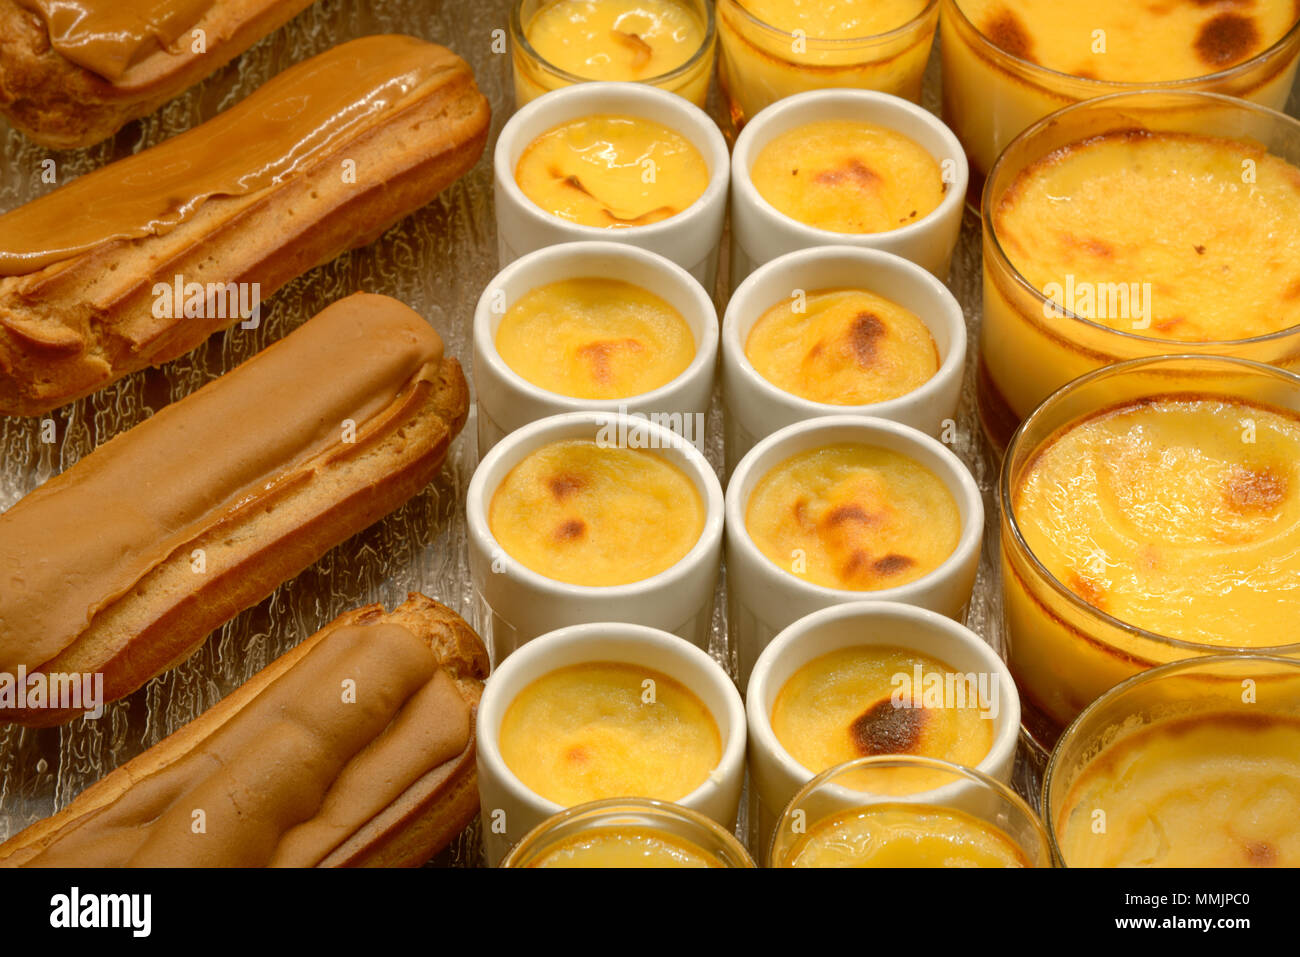 Affichage des crèmes caramels Café & viennoiseries ou gâteaux éclairs dans une pâtisserie française France Banque D'Images